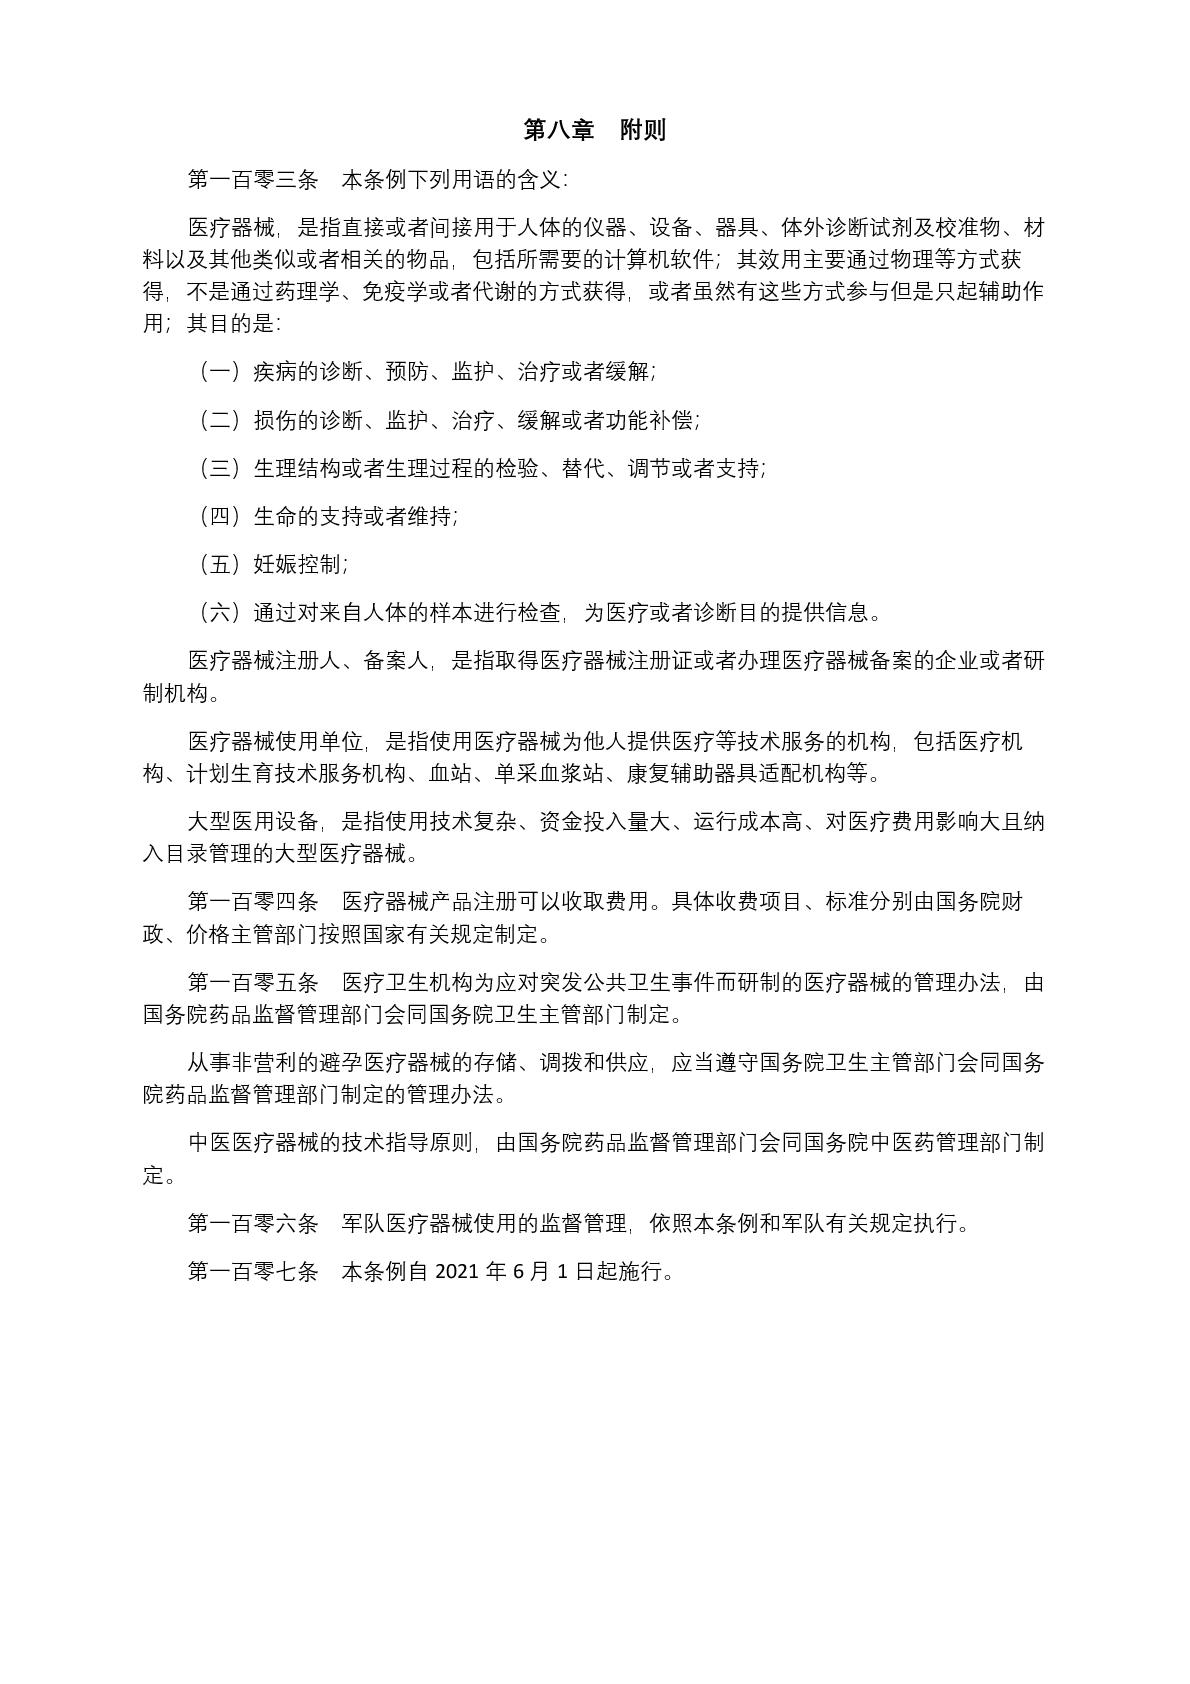 中华人民共和国国务院令第739号(1) (1)-019.jpg